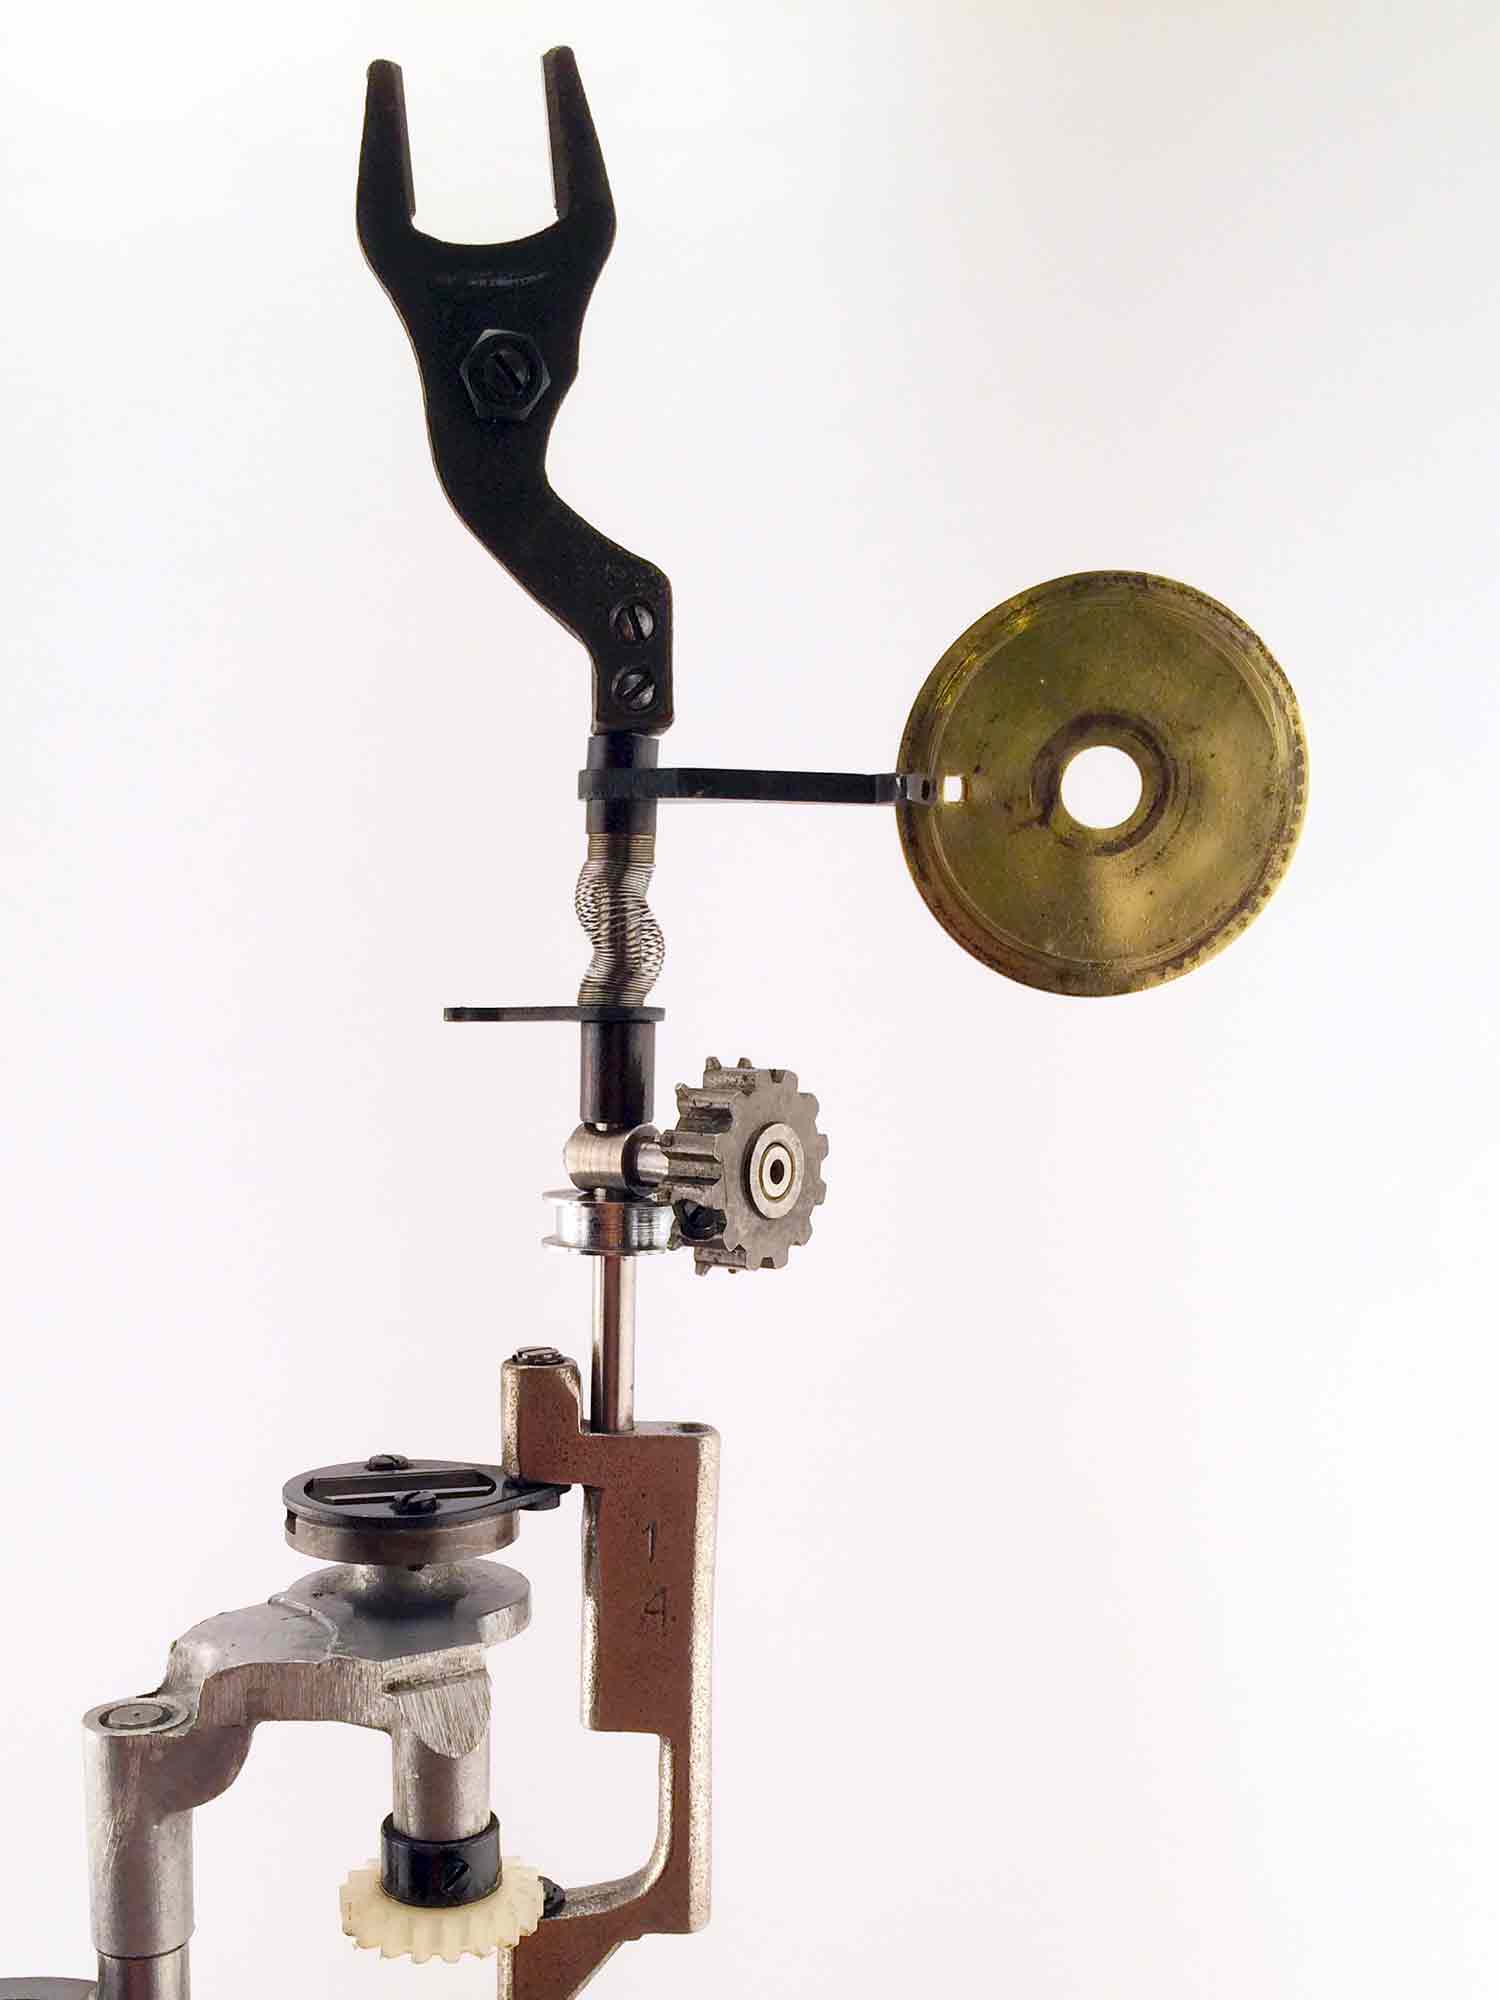 Sculpture of an interpretation of a sewing machine